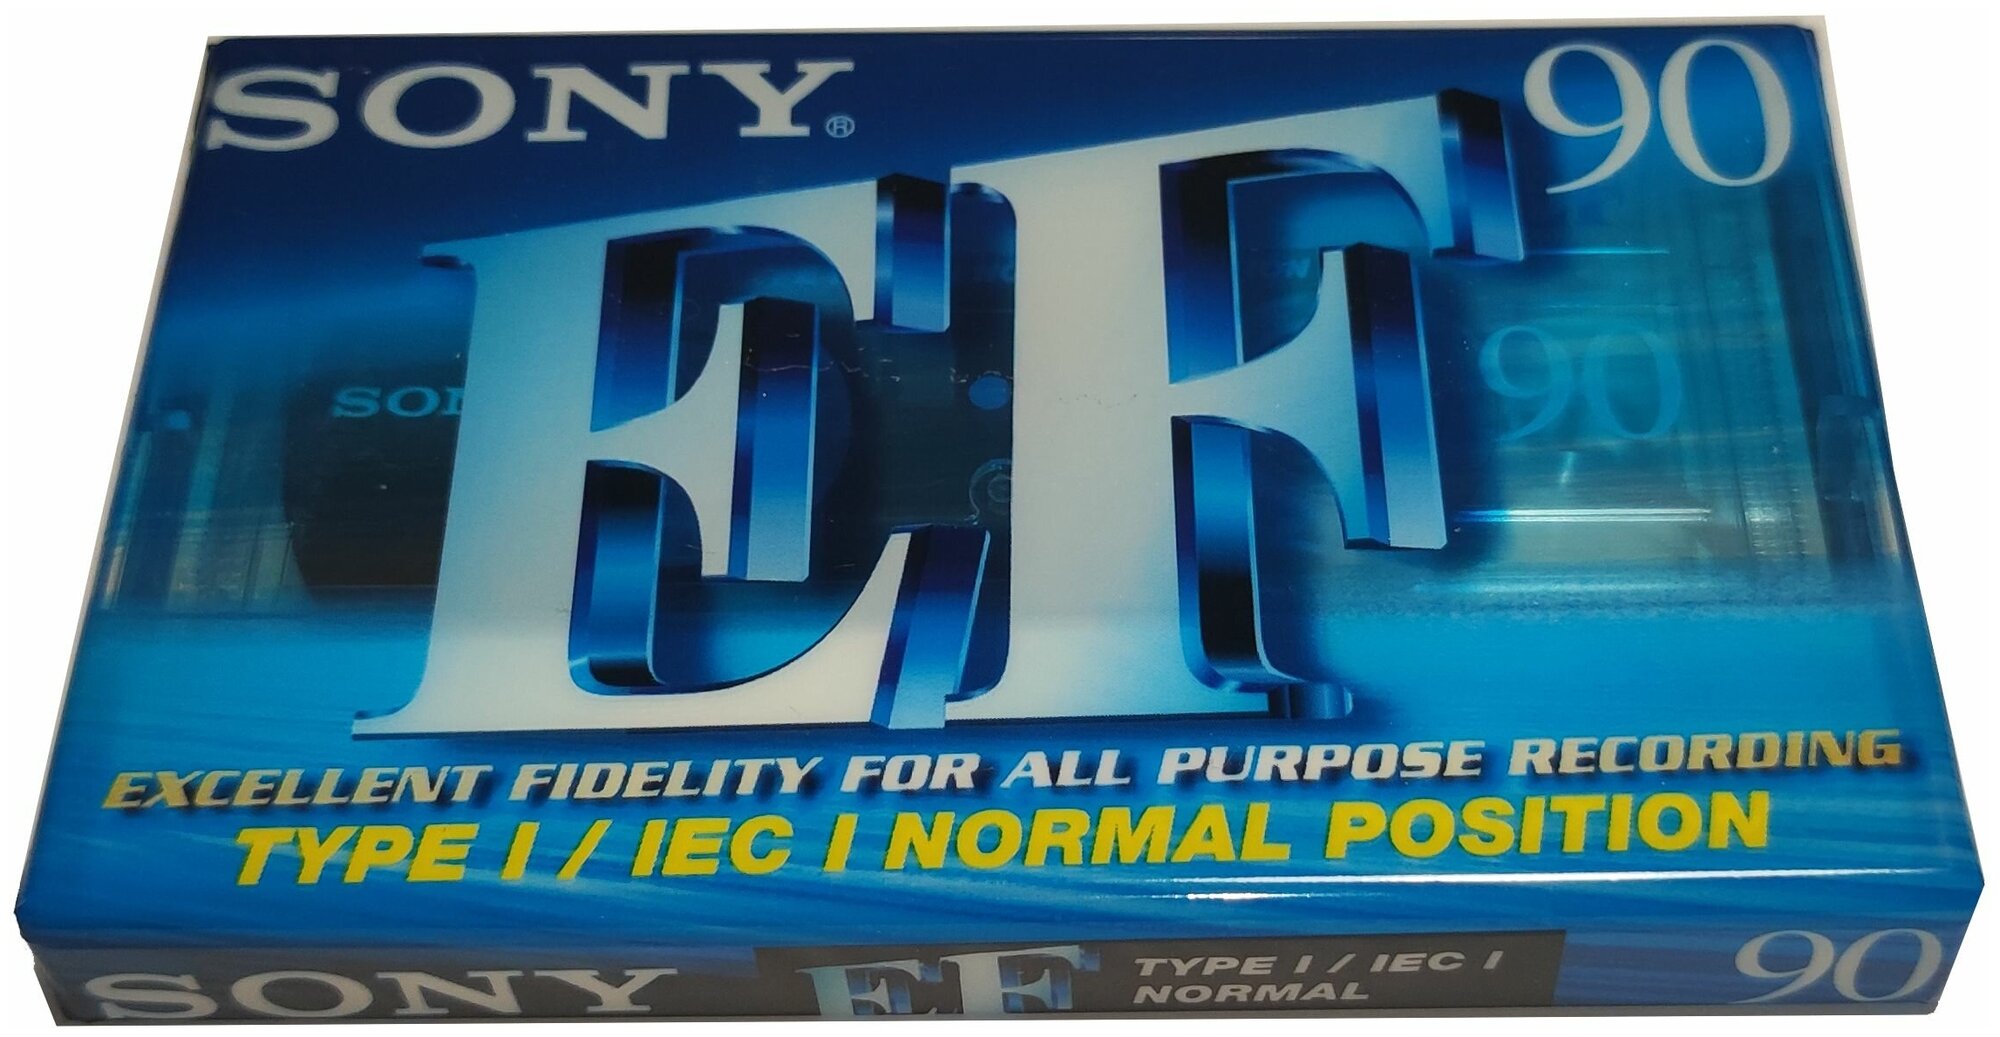 Аудио кассета SONY EF 90